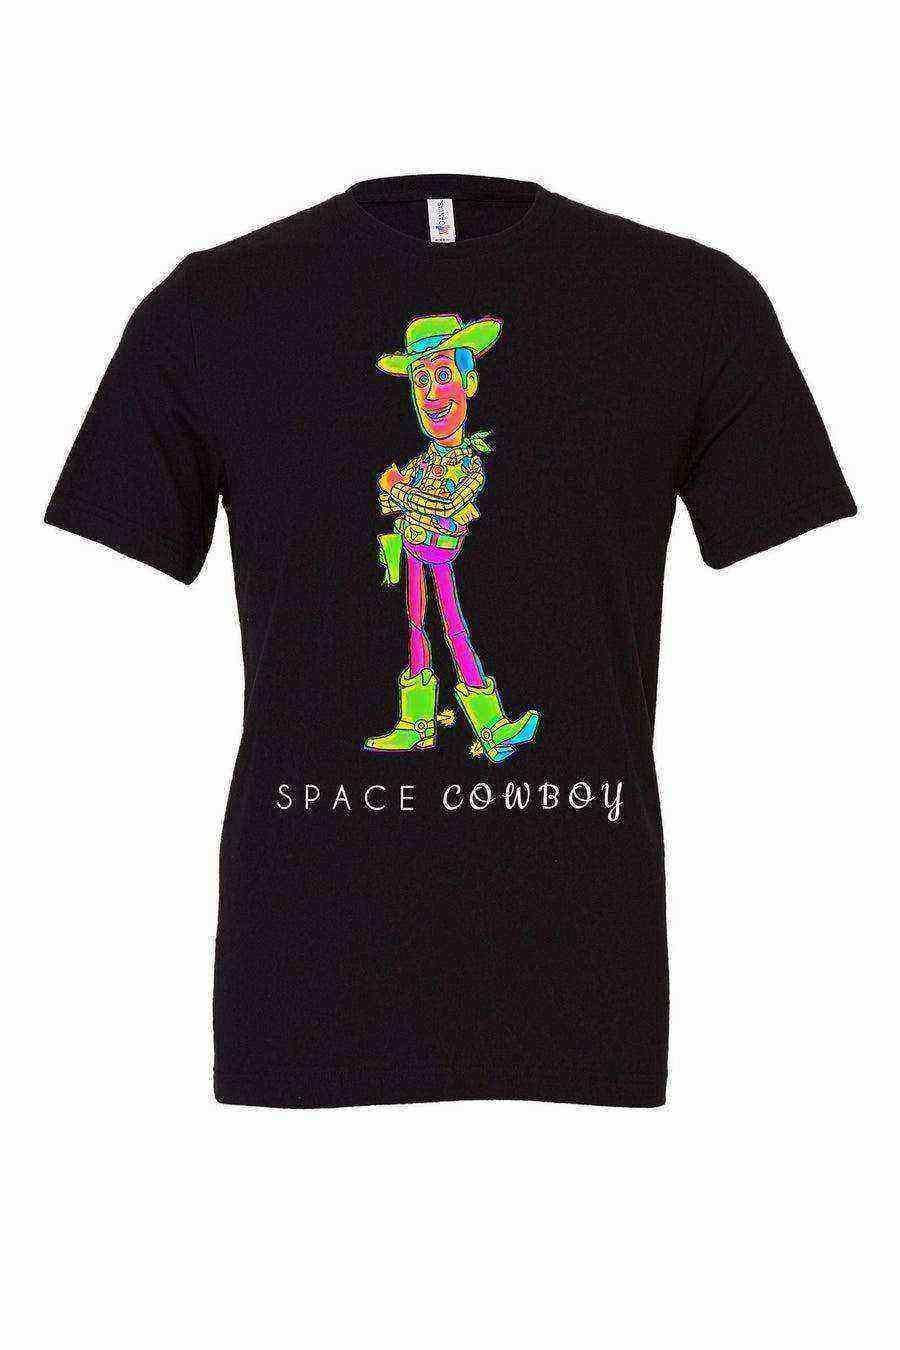 Toddler | Woody Space Cowboy Shirt | Music Mashup - Dylan's Tees